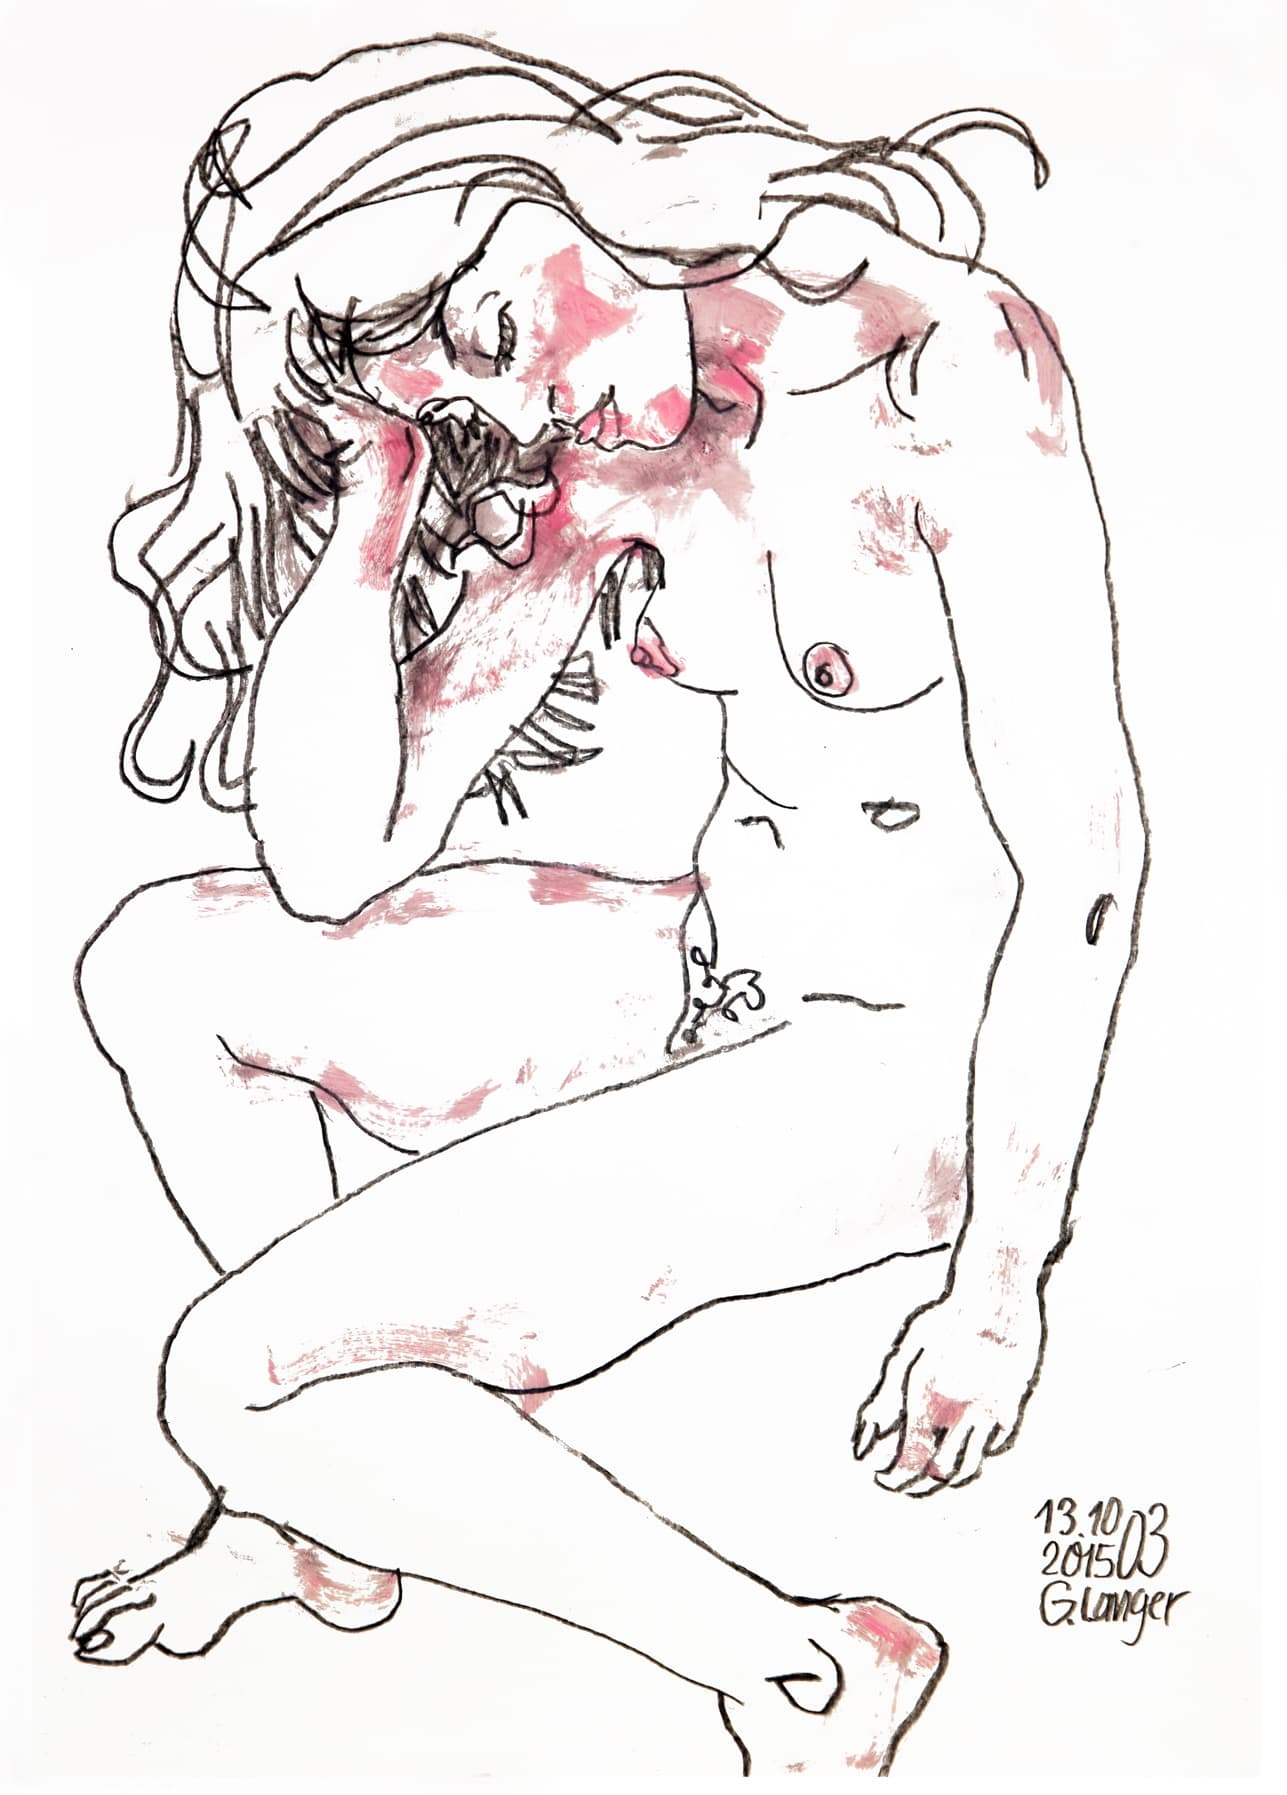 Gunter Langer, sitzender weiblicher Akt mit aufgestütztem Kopf, Ruhende, 2015, Algraphie (Druckgrafik), Büttenpapier, 52 x 38 cm